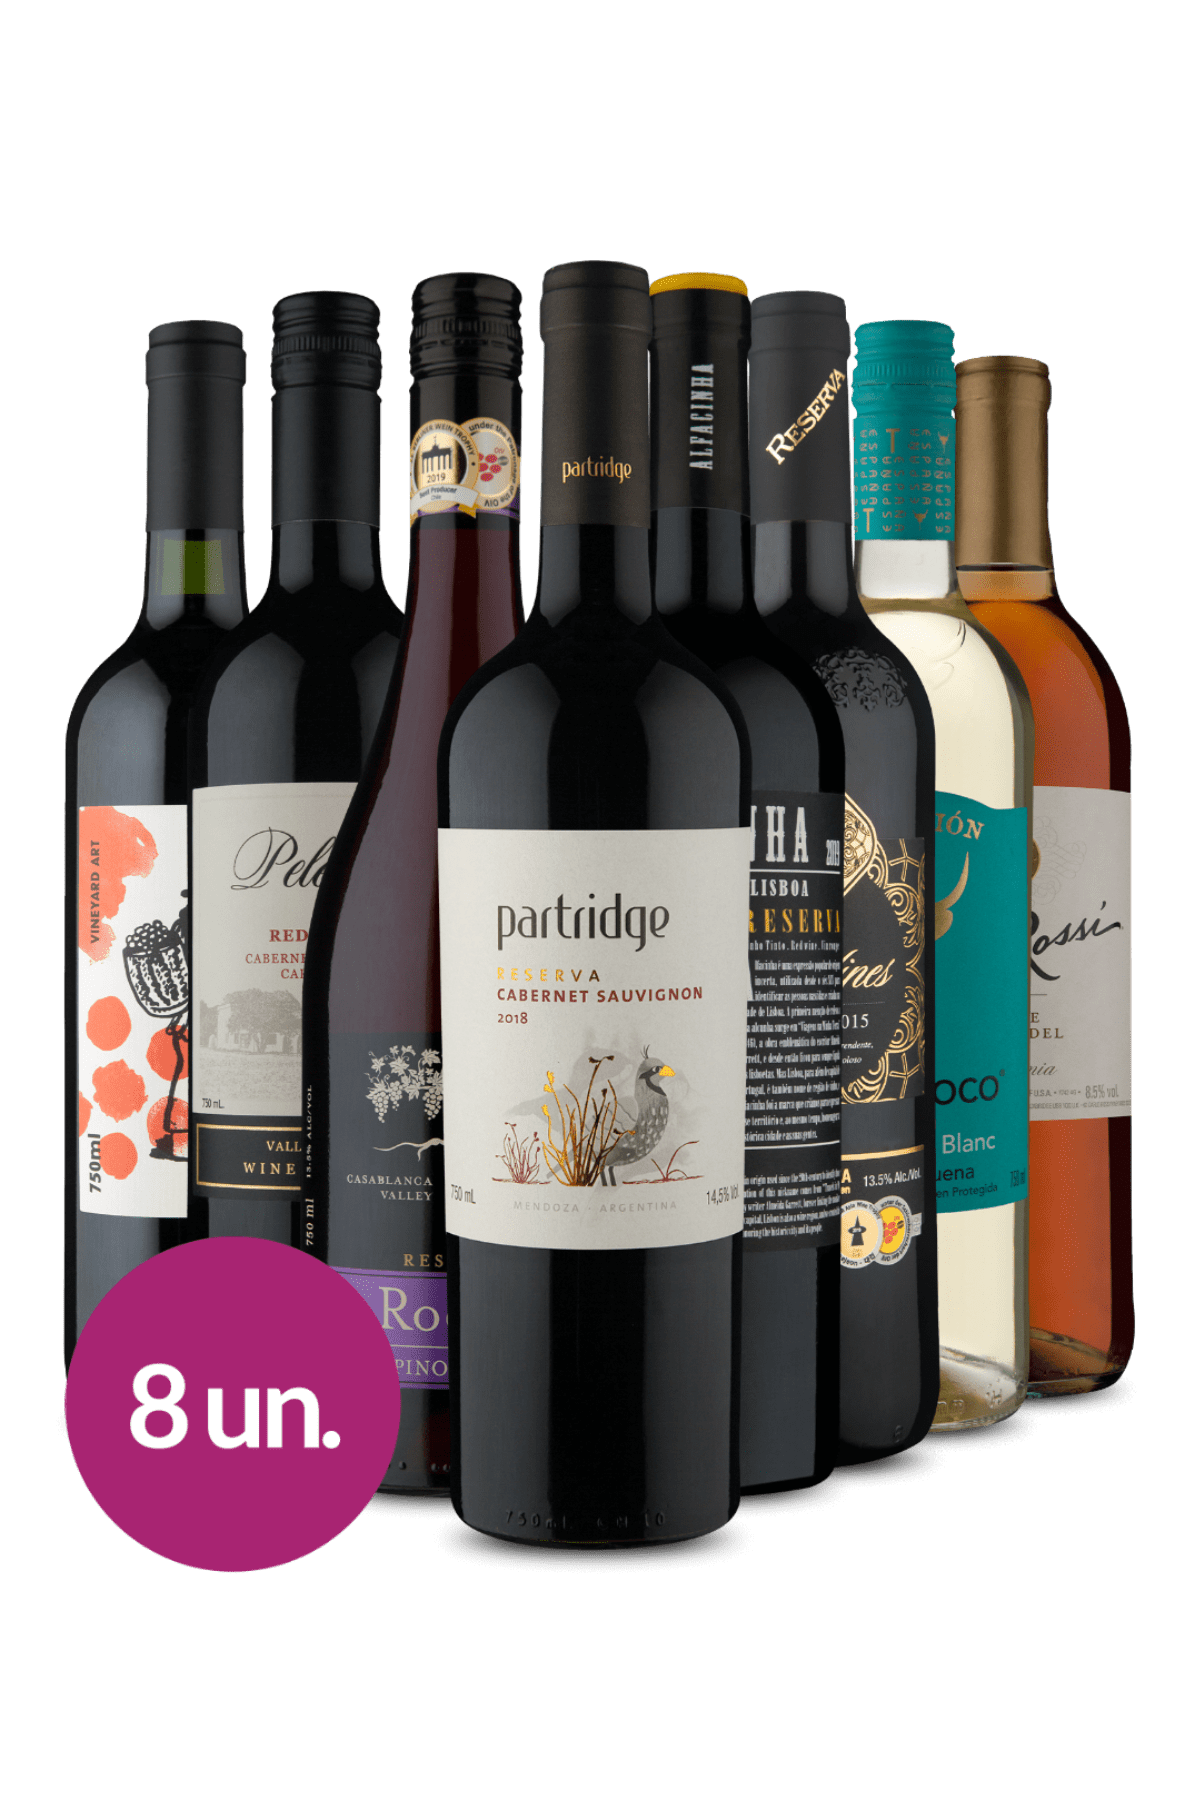 Kit 8 - Top Wine Best Sellers